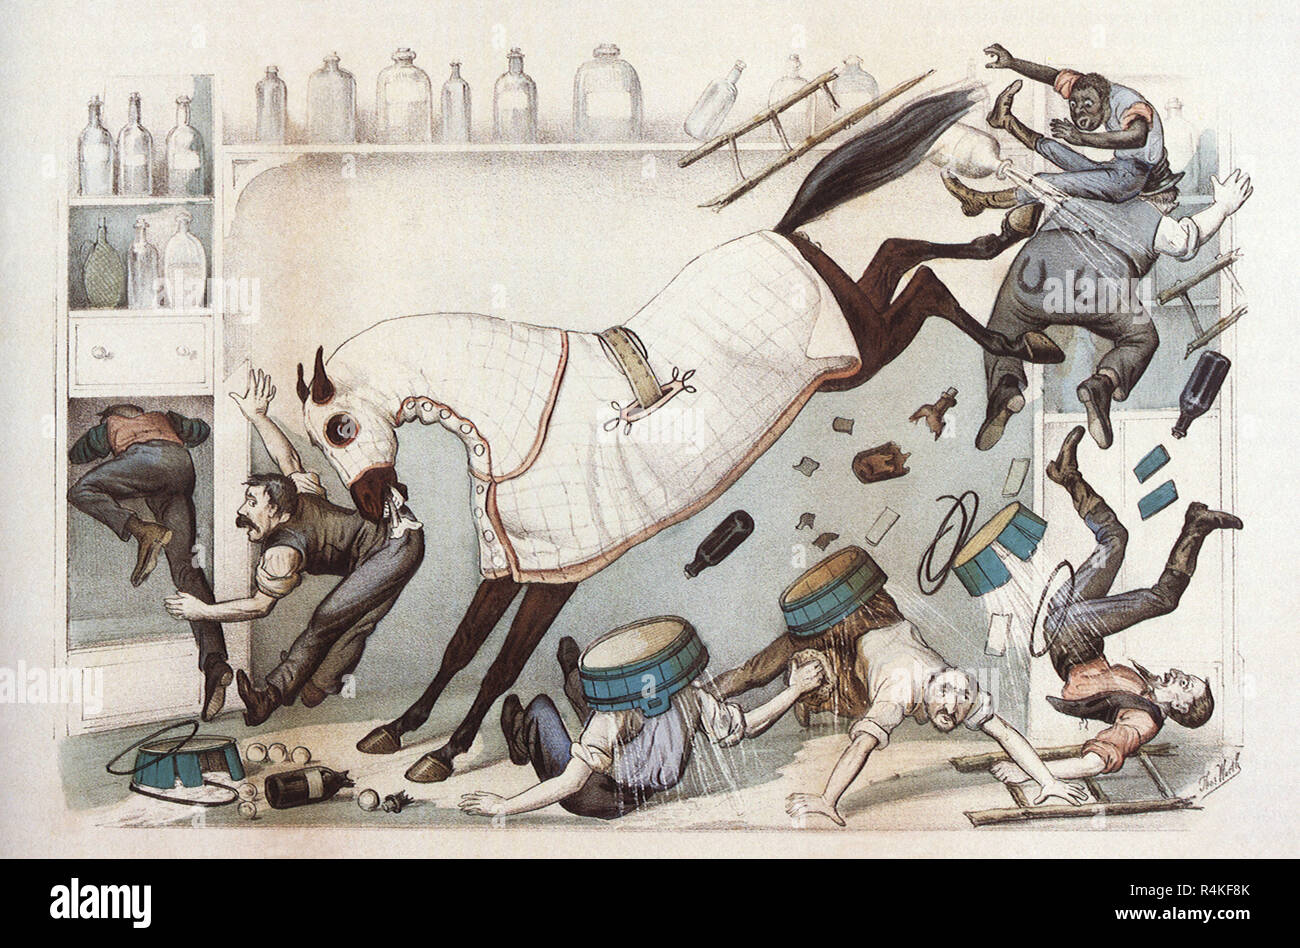 Des coups de pieds, mordre, cheval, Nathaniel Currier & Ives, confiture. Banque D'Images